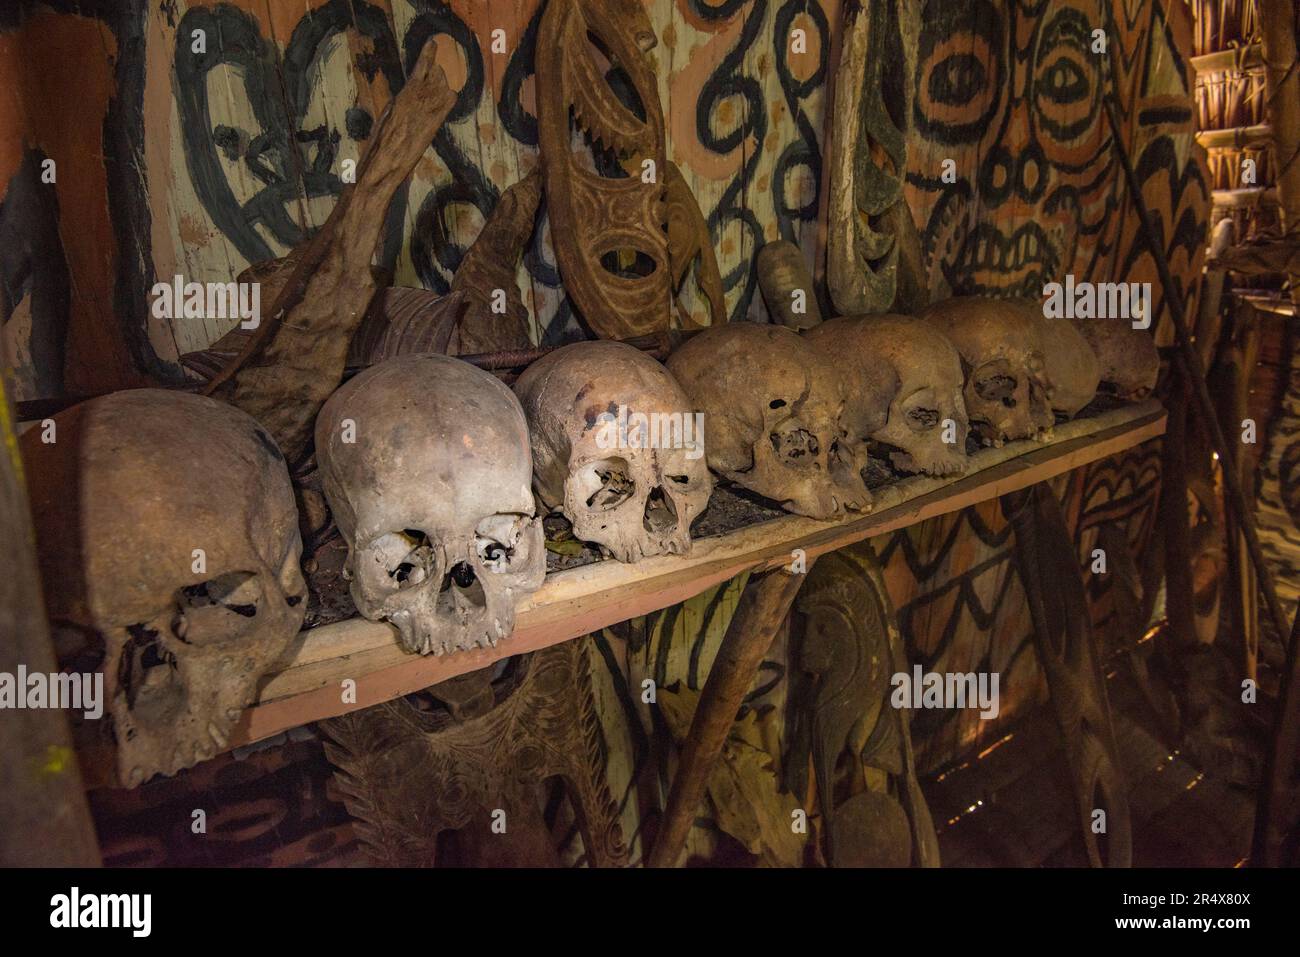 Gros plan de crânes humains exposés dans une Spirit House à Karawari dans la région de Sepik en Papouasie-Nouvelle-Guinée. C'est une partie de la tribu Yokoim, qui wa... Banque D'Images